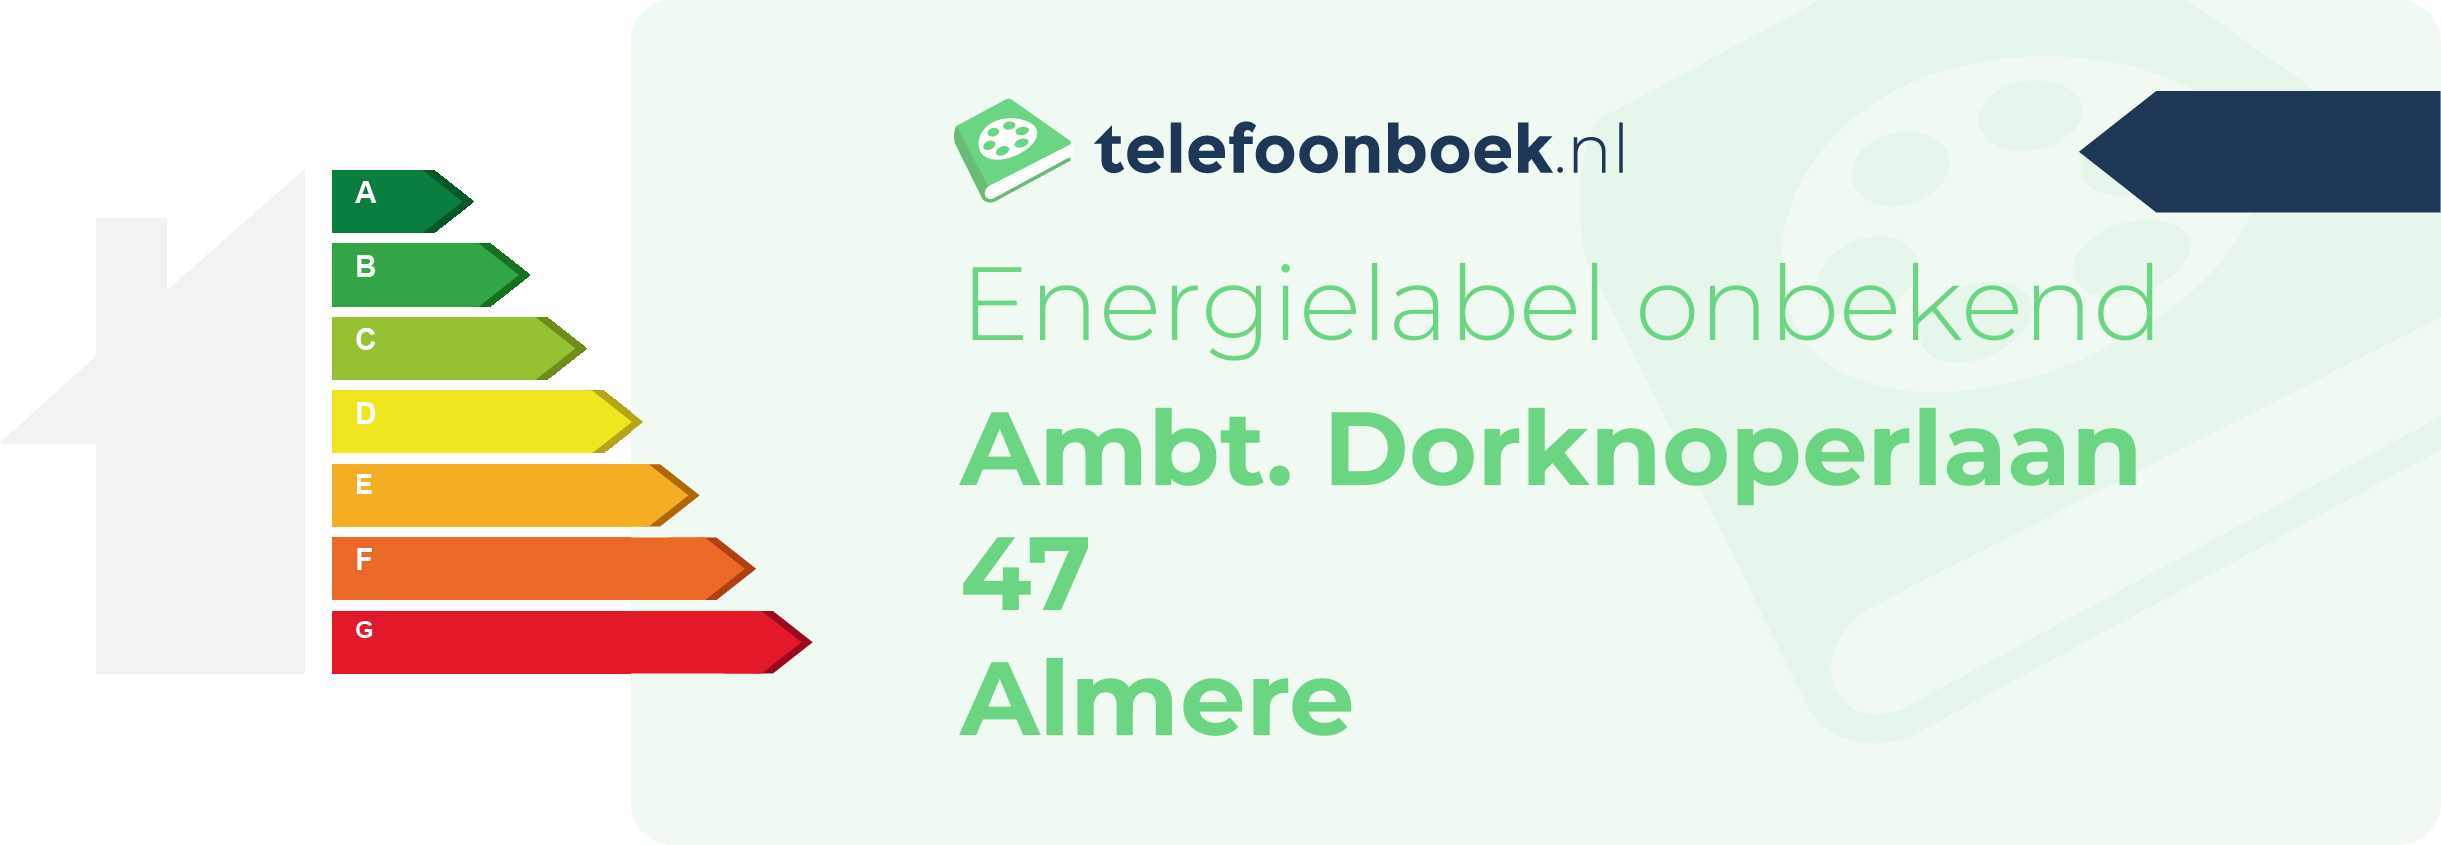 Energielabel Ambt. Dorknoperlaan 47 Almere